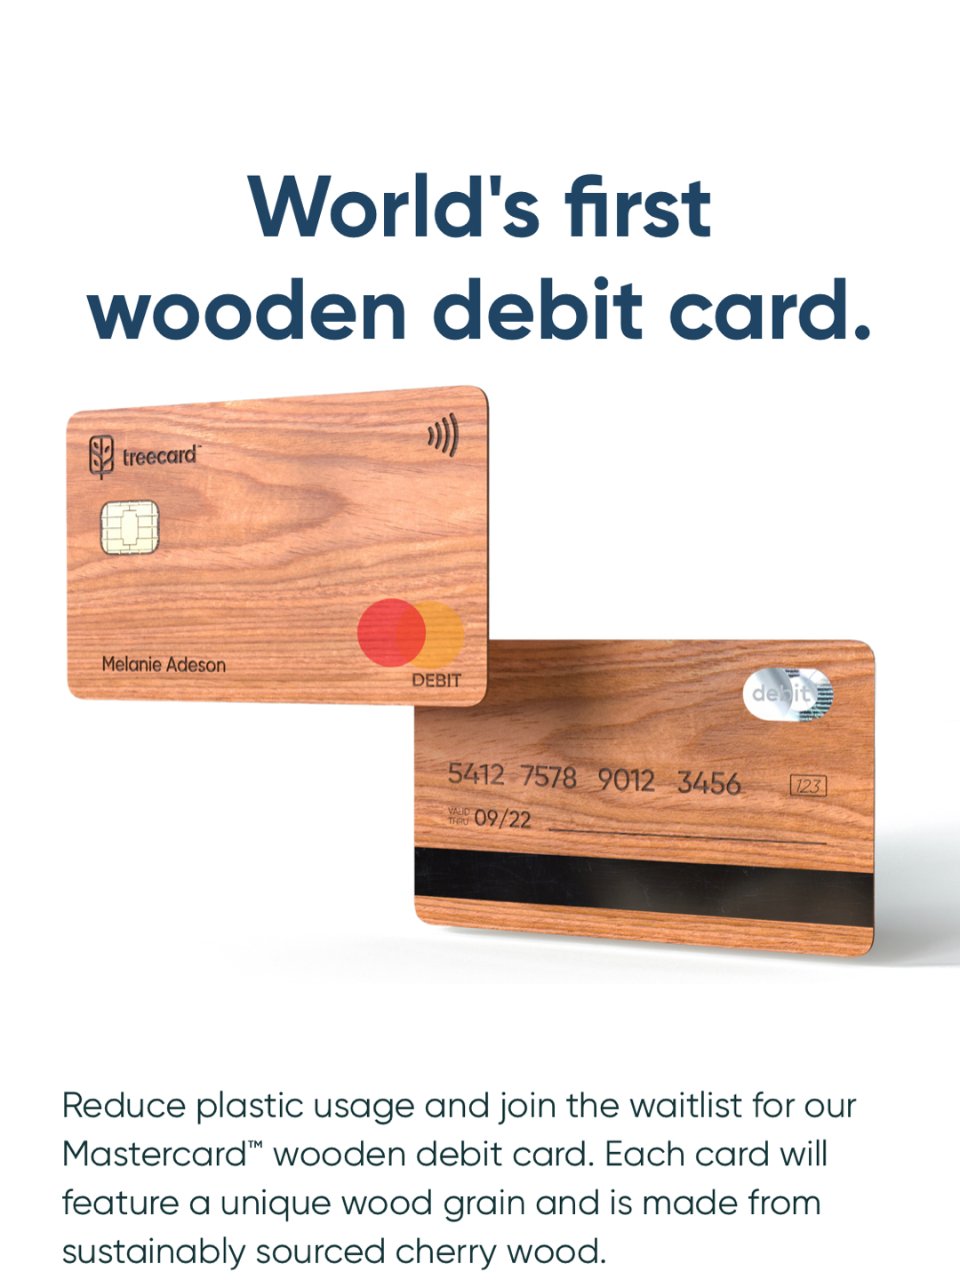 快来免费领取全球唯一木制储蓄卡吧！！...